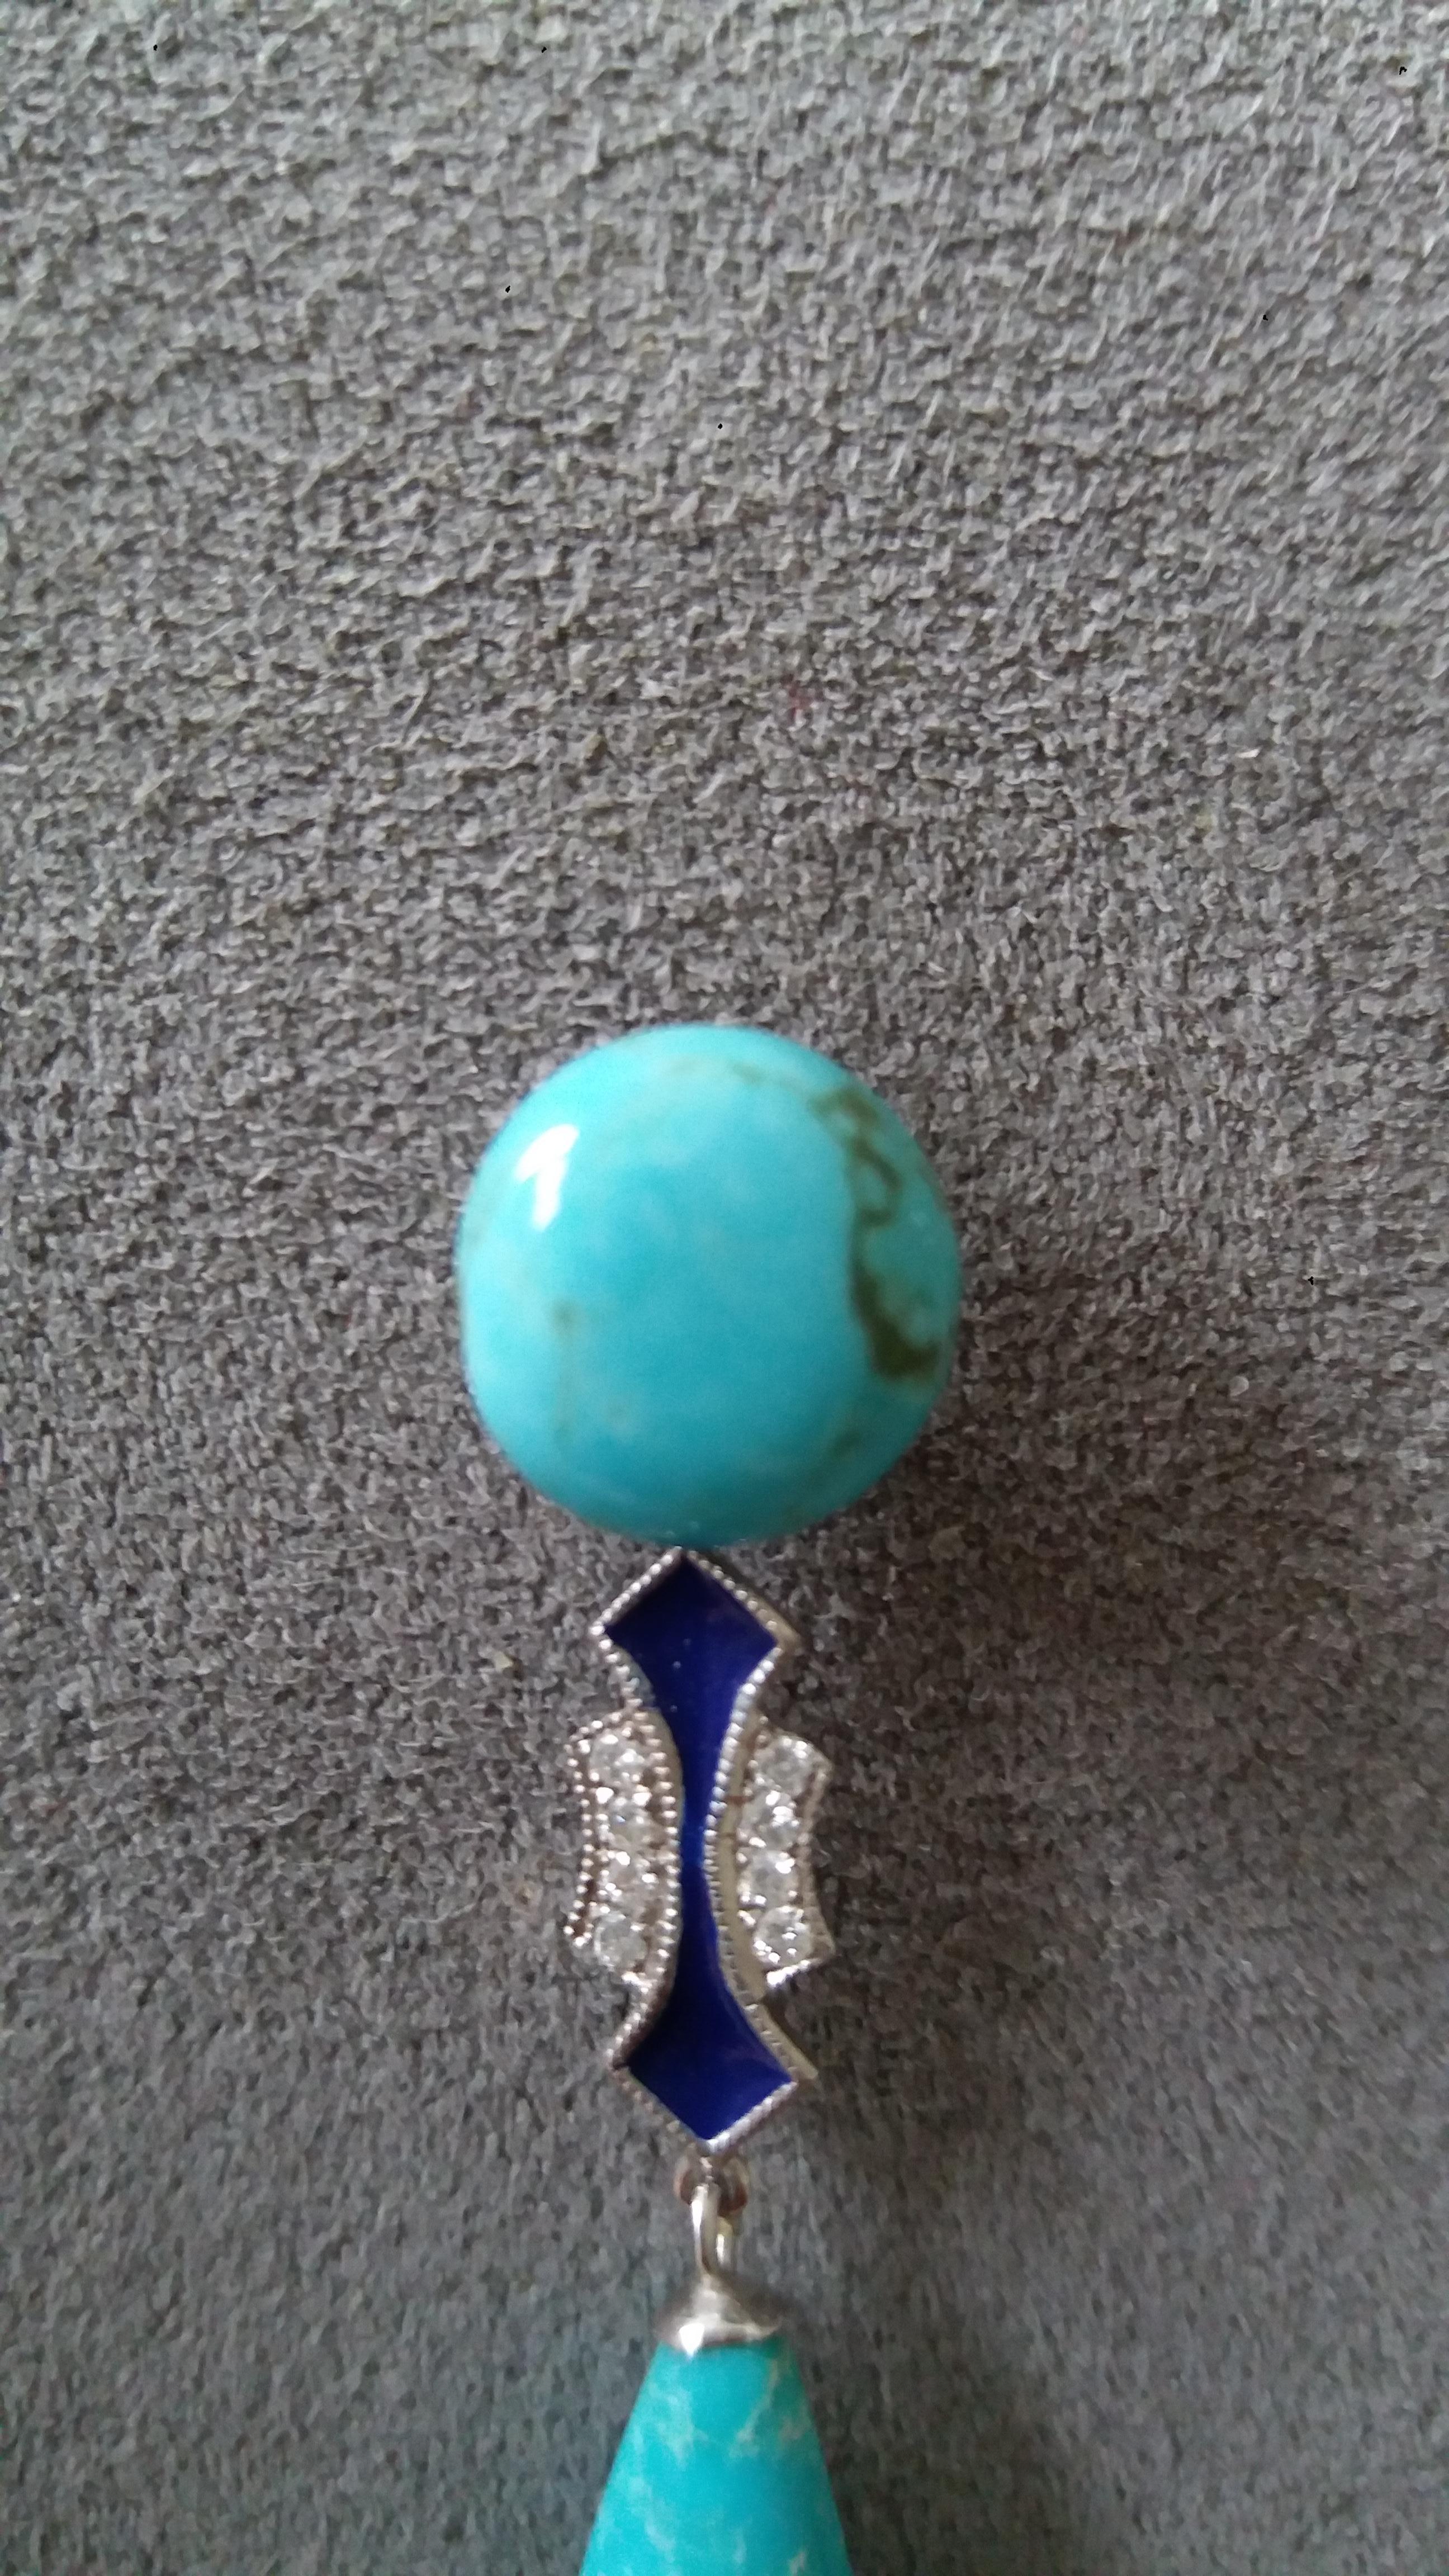 genuine turquoise drop earrings